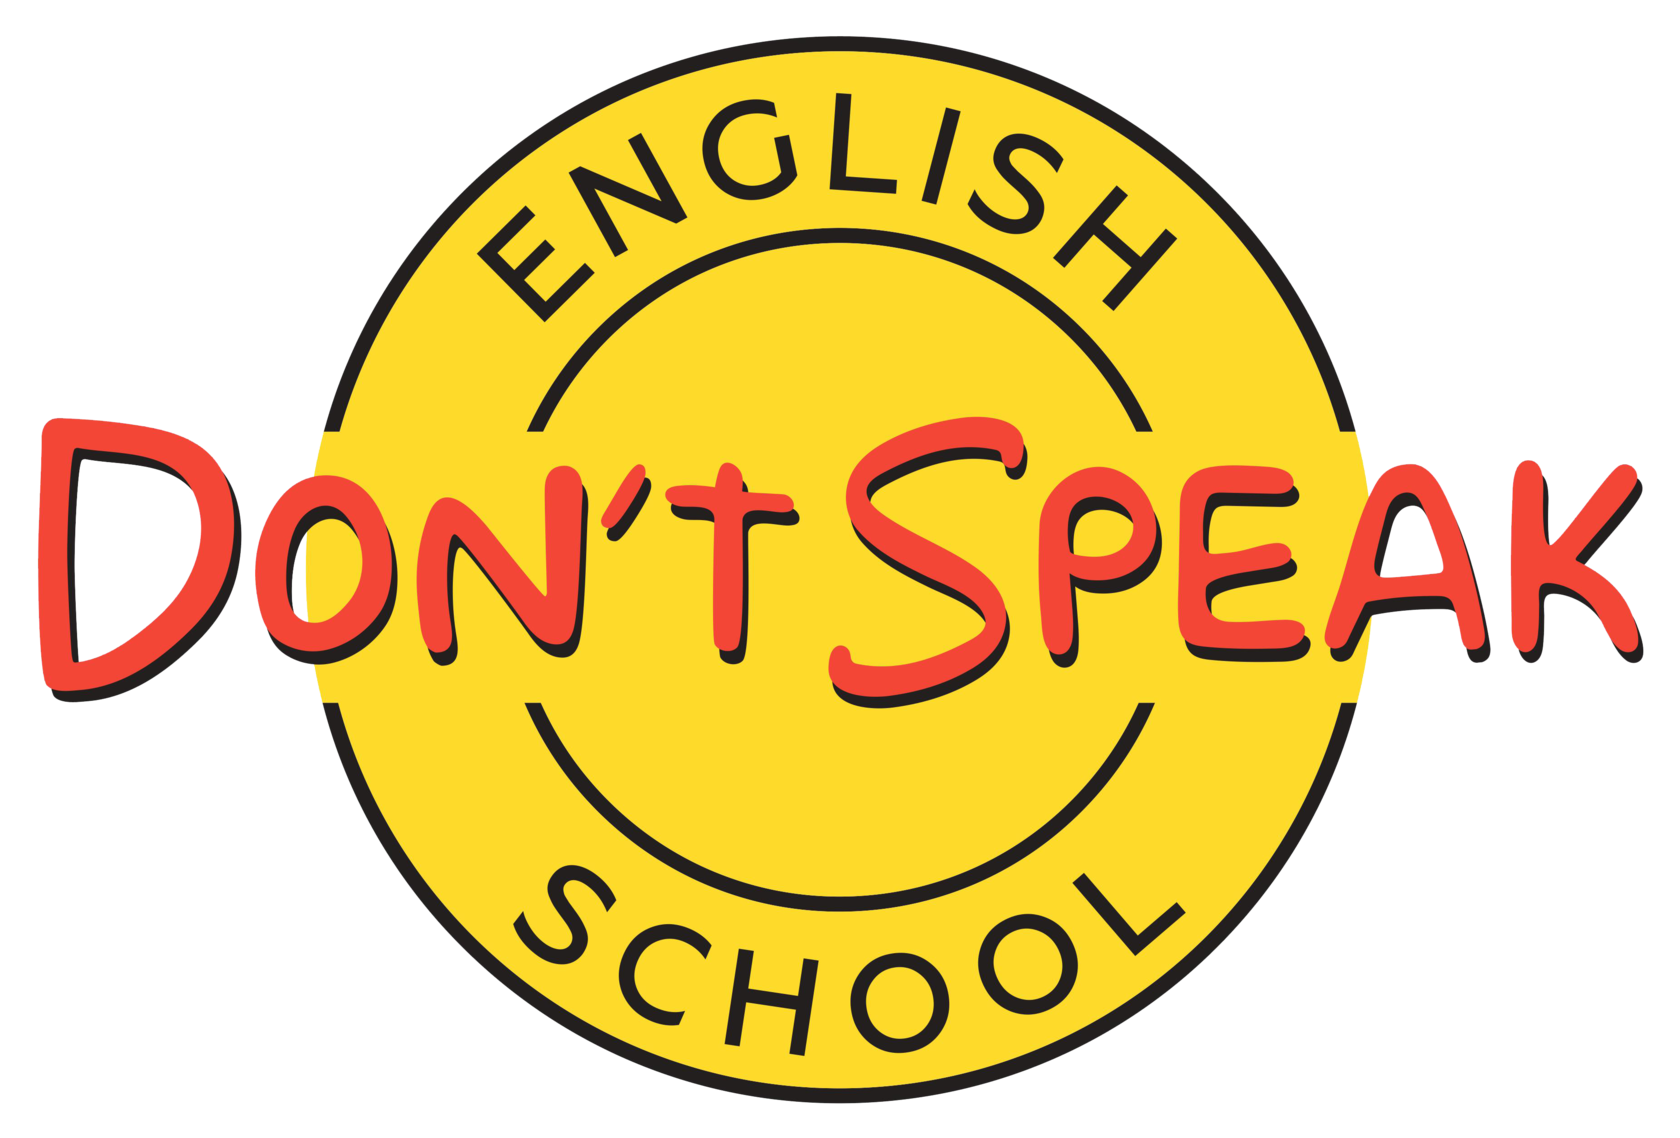 Don t they speak english. Школа донт спик. Don't speak школа английского языка. I don't speak English школа. Don’t speak подкаст.